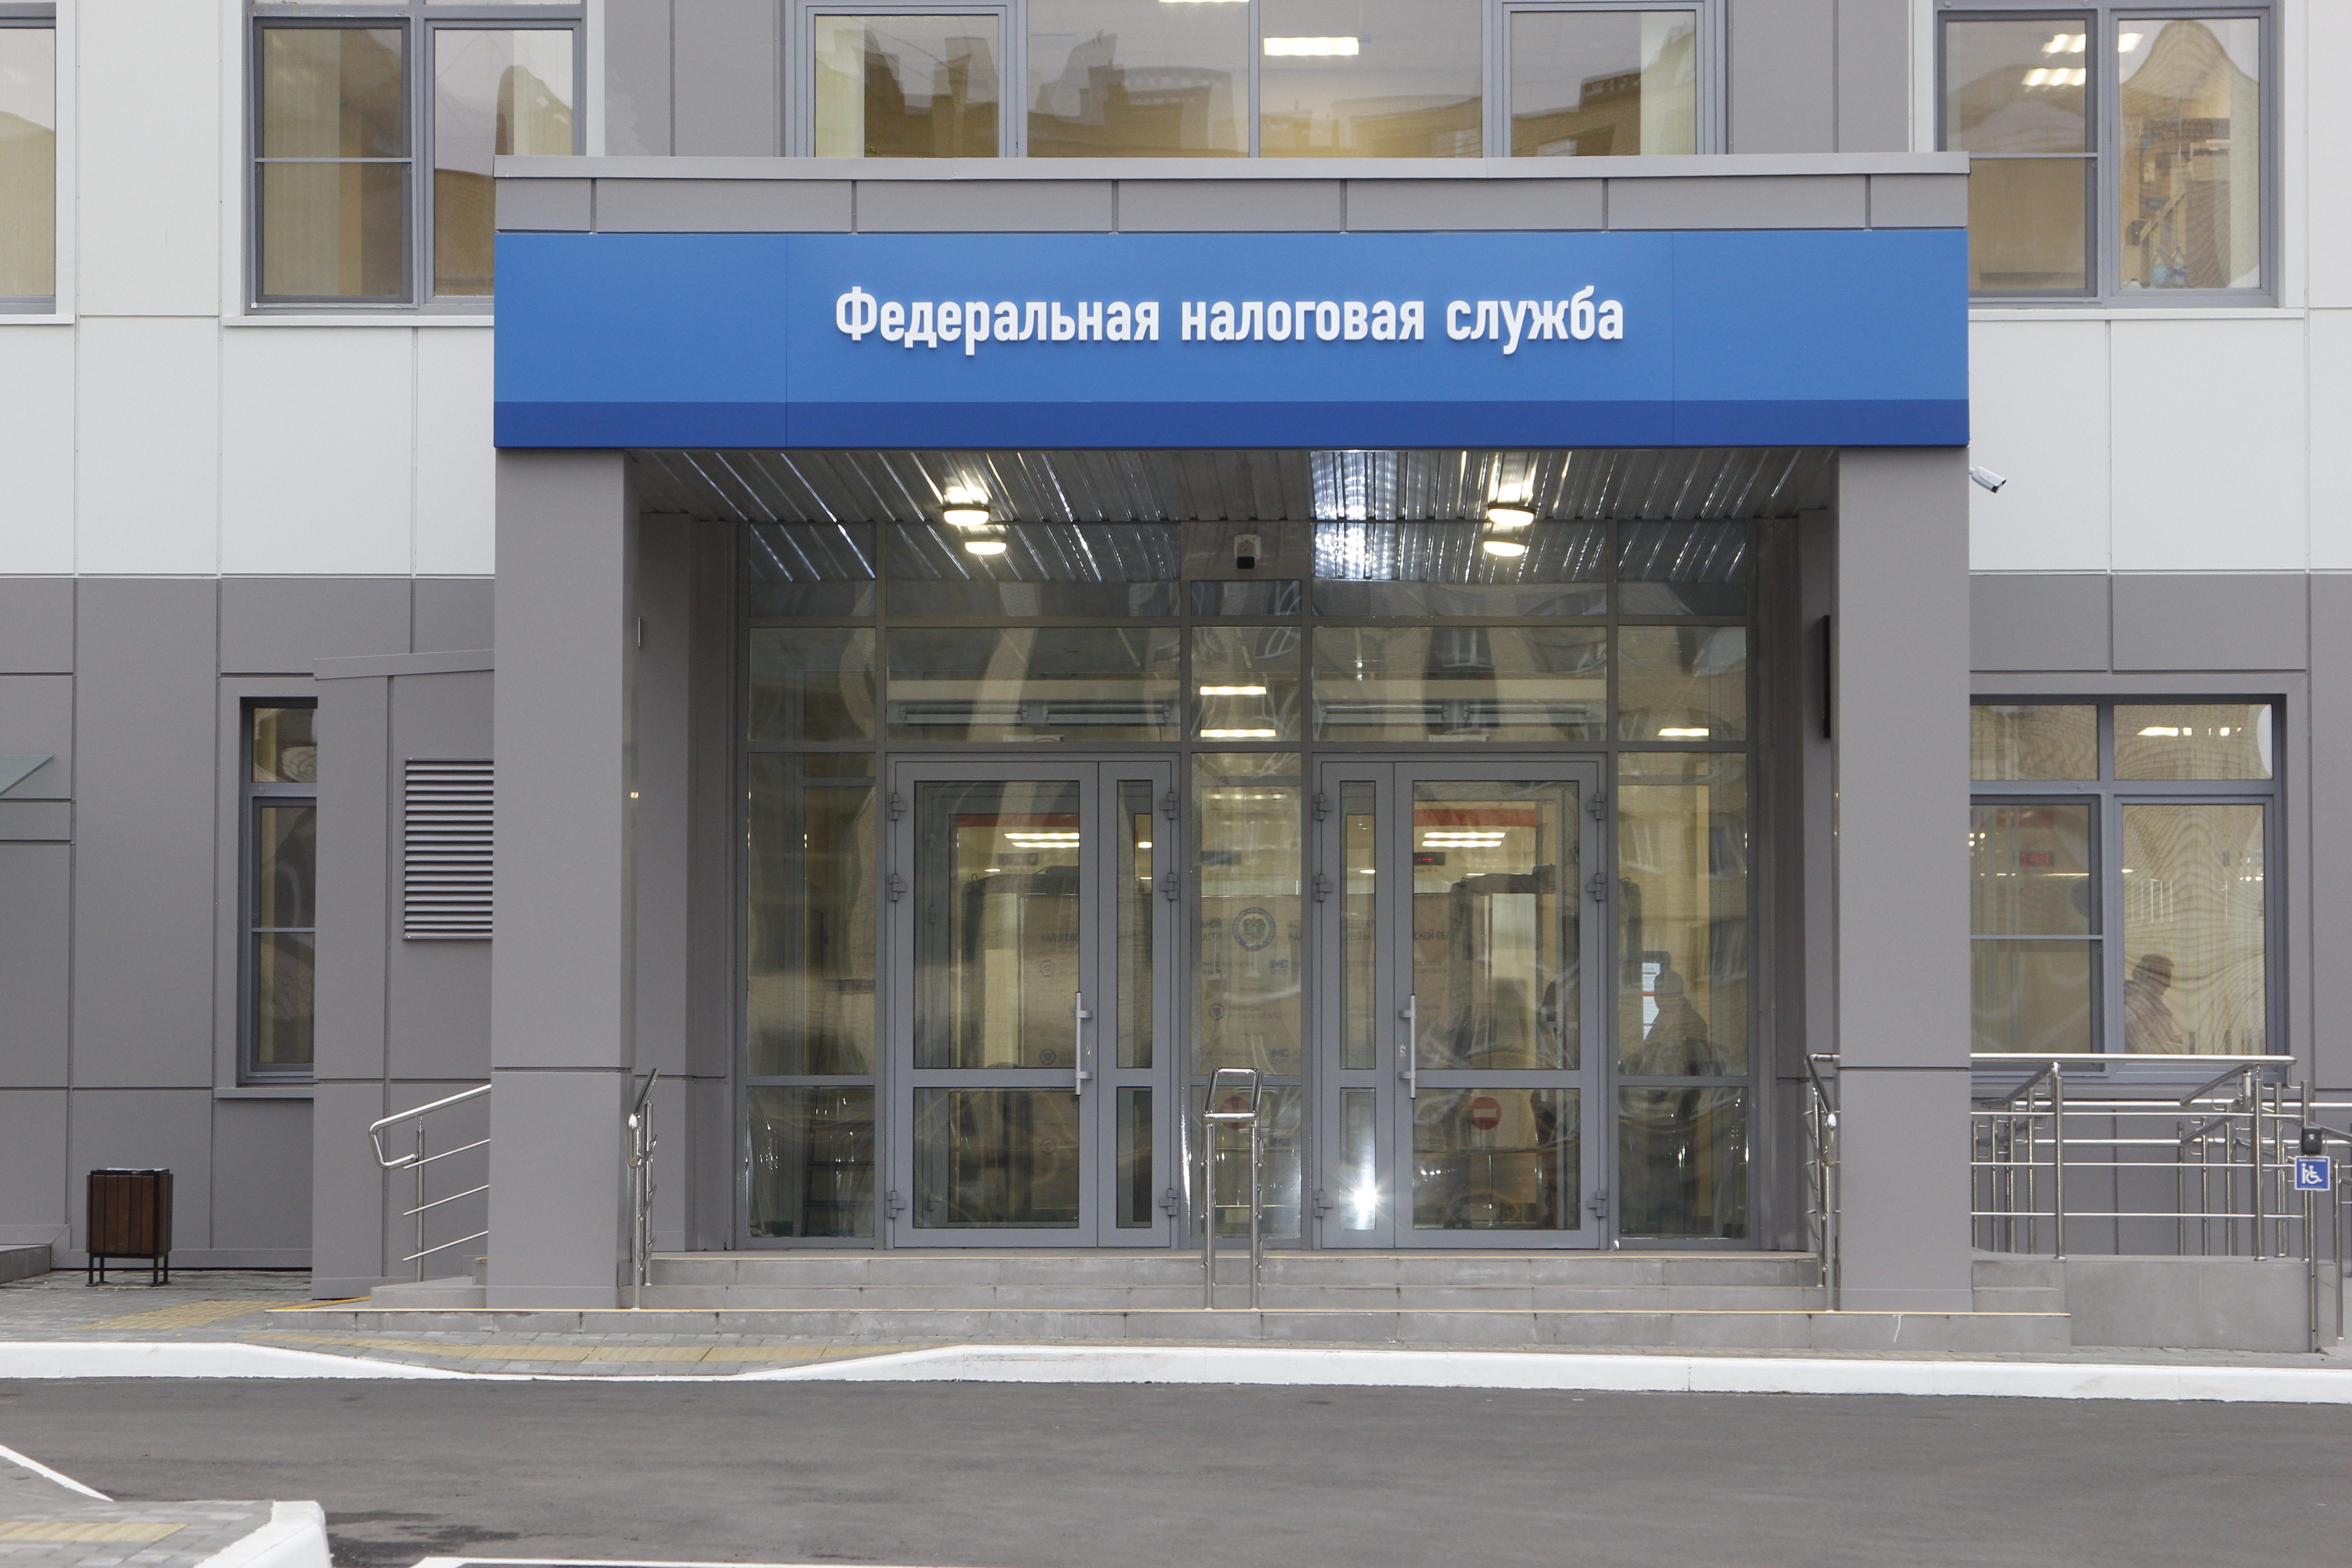 Клиентский операционный зал приема налогоплательщиков (всех категорий) находится по адресу: г. Тамбов, проезд Школьный-1, д. 1